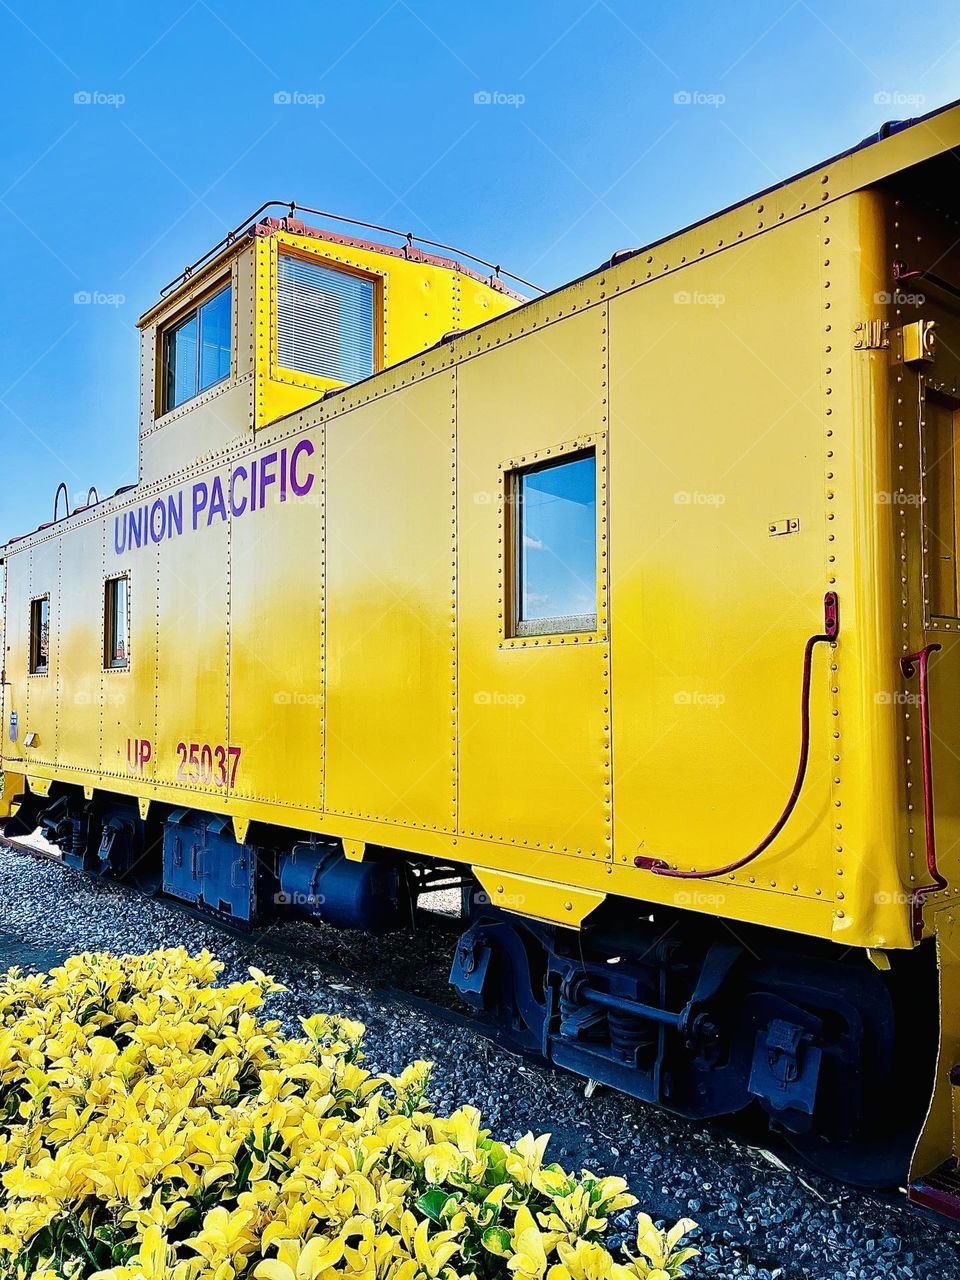 Union Pacific Railroad Caboose